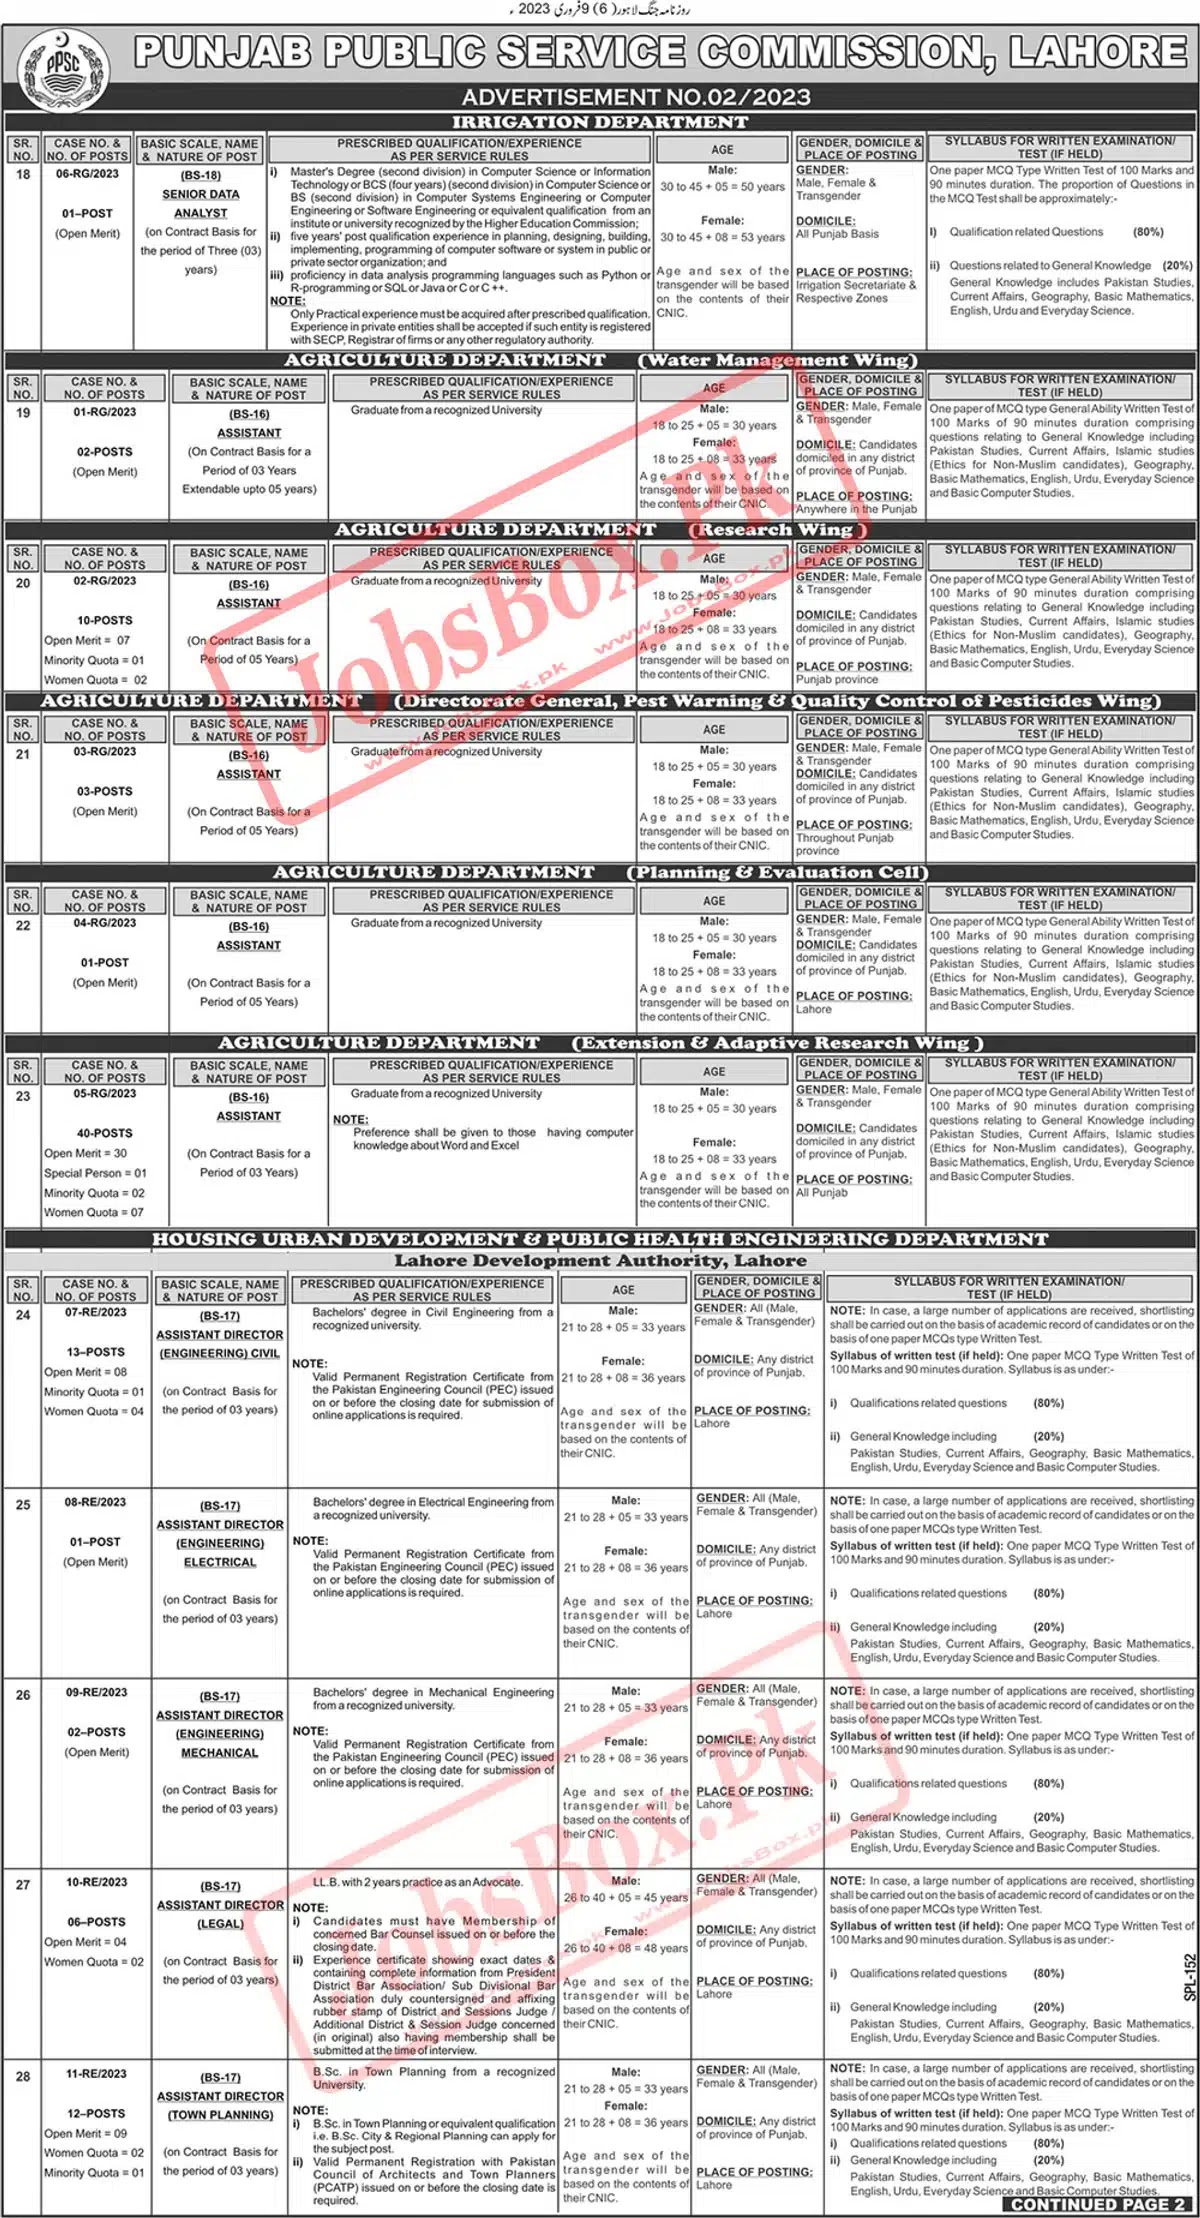 Punjab Public Service Commission Jobs 2023 – PPSC AdvertisementNo. 02| Vacancies Details